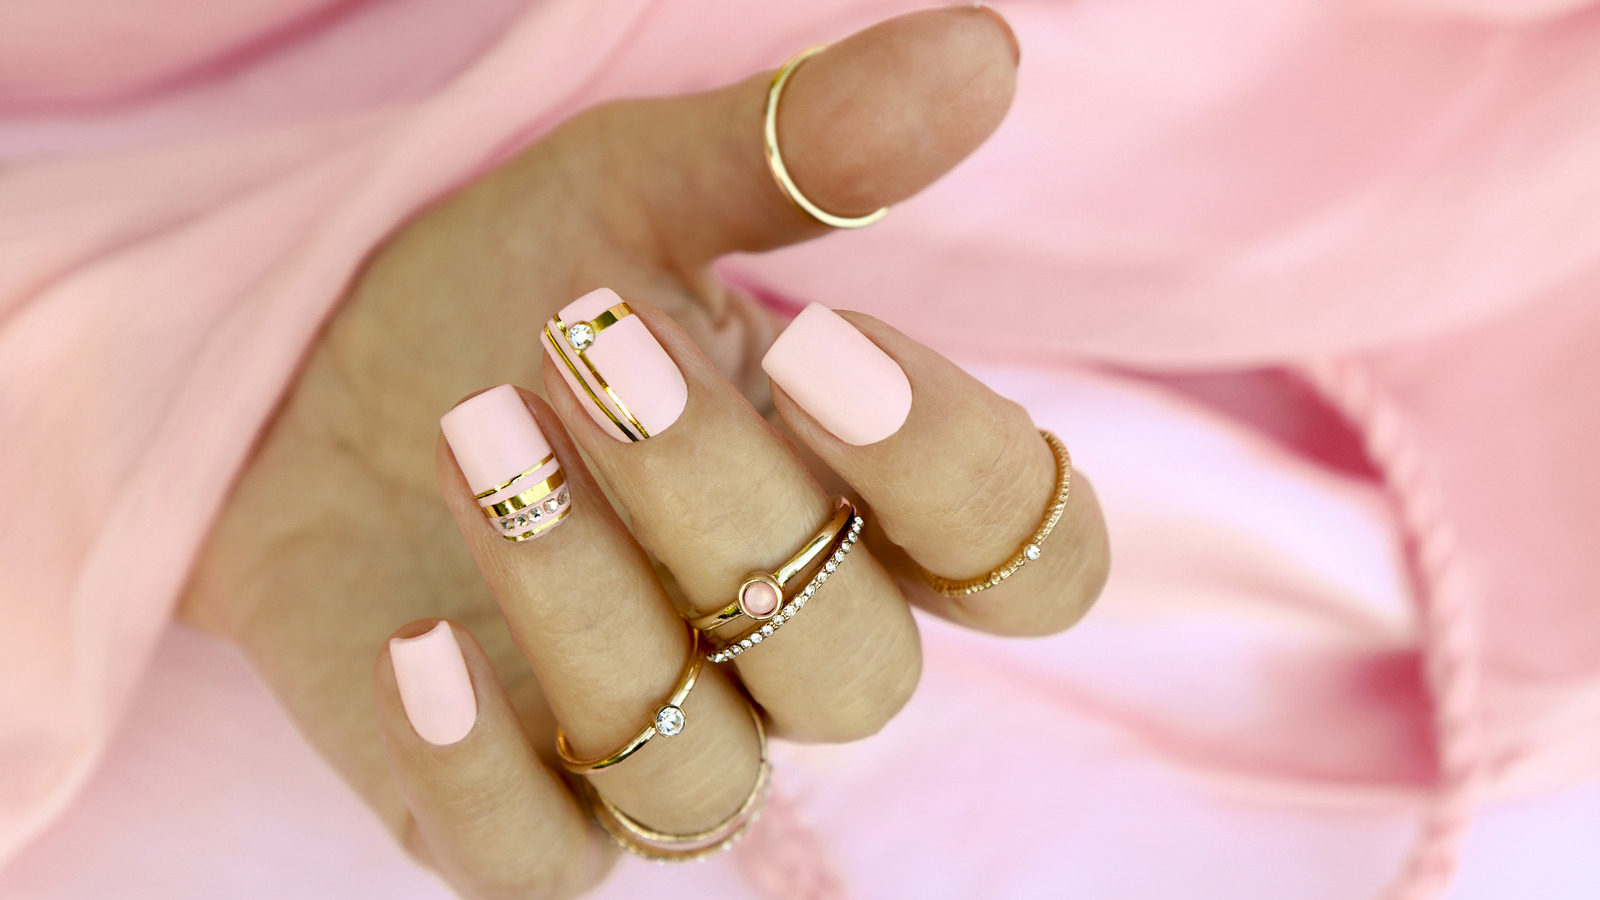 White transparent rhinestone nails design nailart  Rhinestone nails, Nails  design with rhinestones, Nail art